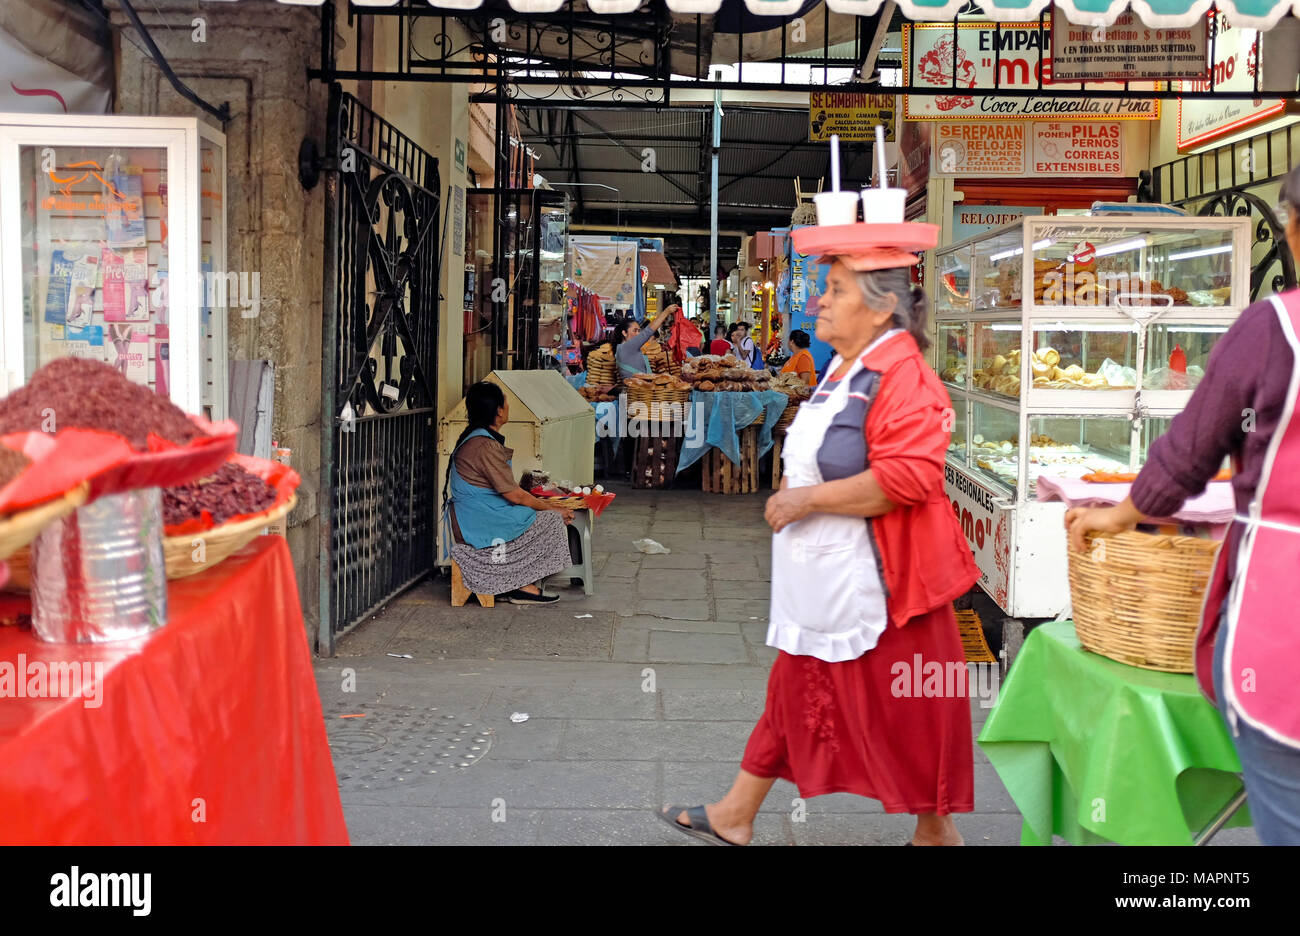 L'une des entrées au marché principal de la vieille ville de Oaxaca, Mexique, montre l'énergie et paysage unique de la région. Banque D'Images